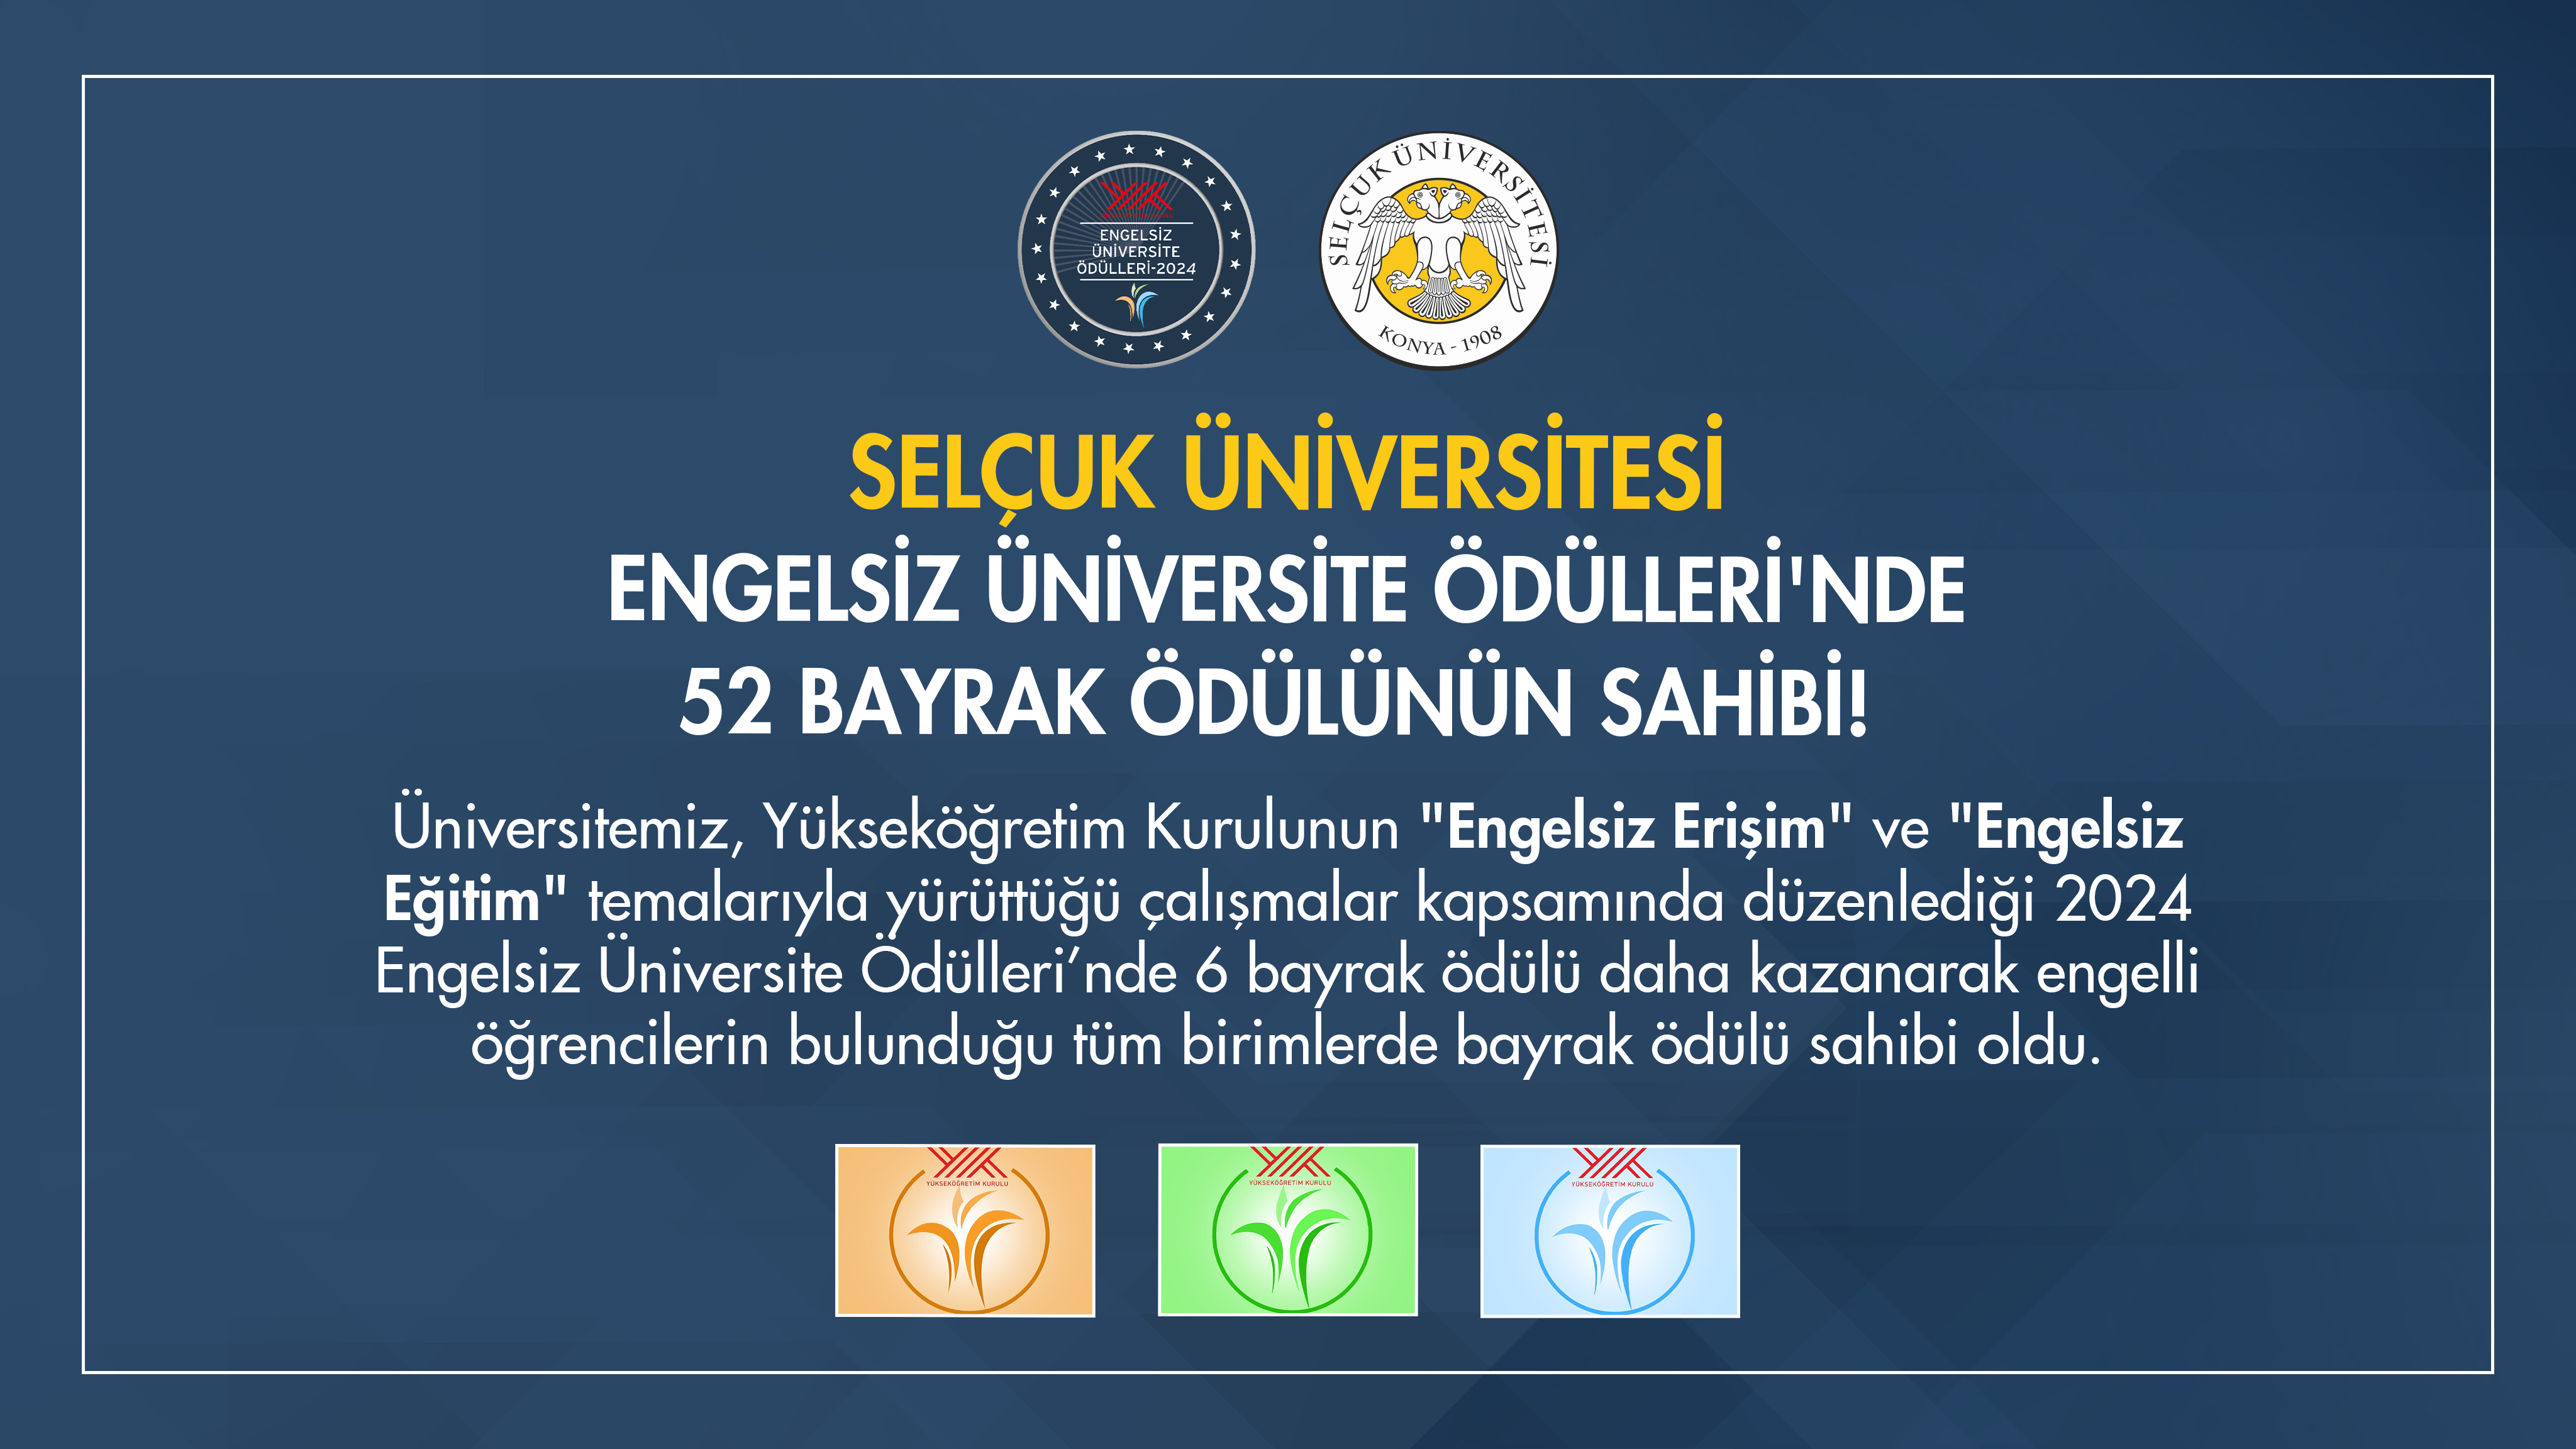 Selçuk Üniversitesi ‘Engelsiz Üniversite Ödülleri’nde 52 Bayrağın Sahibi